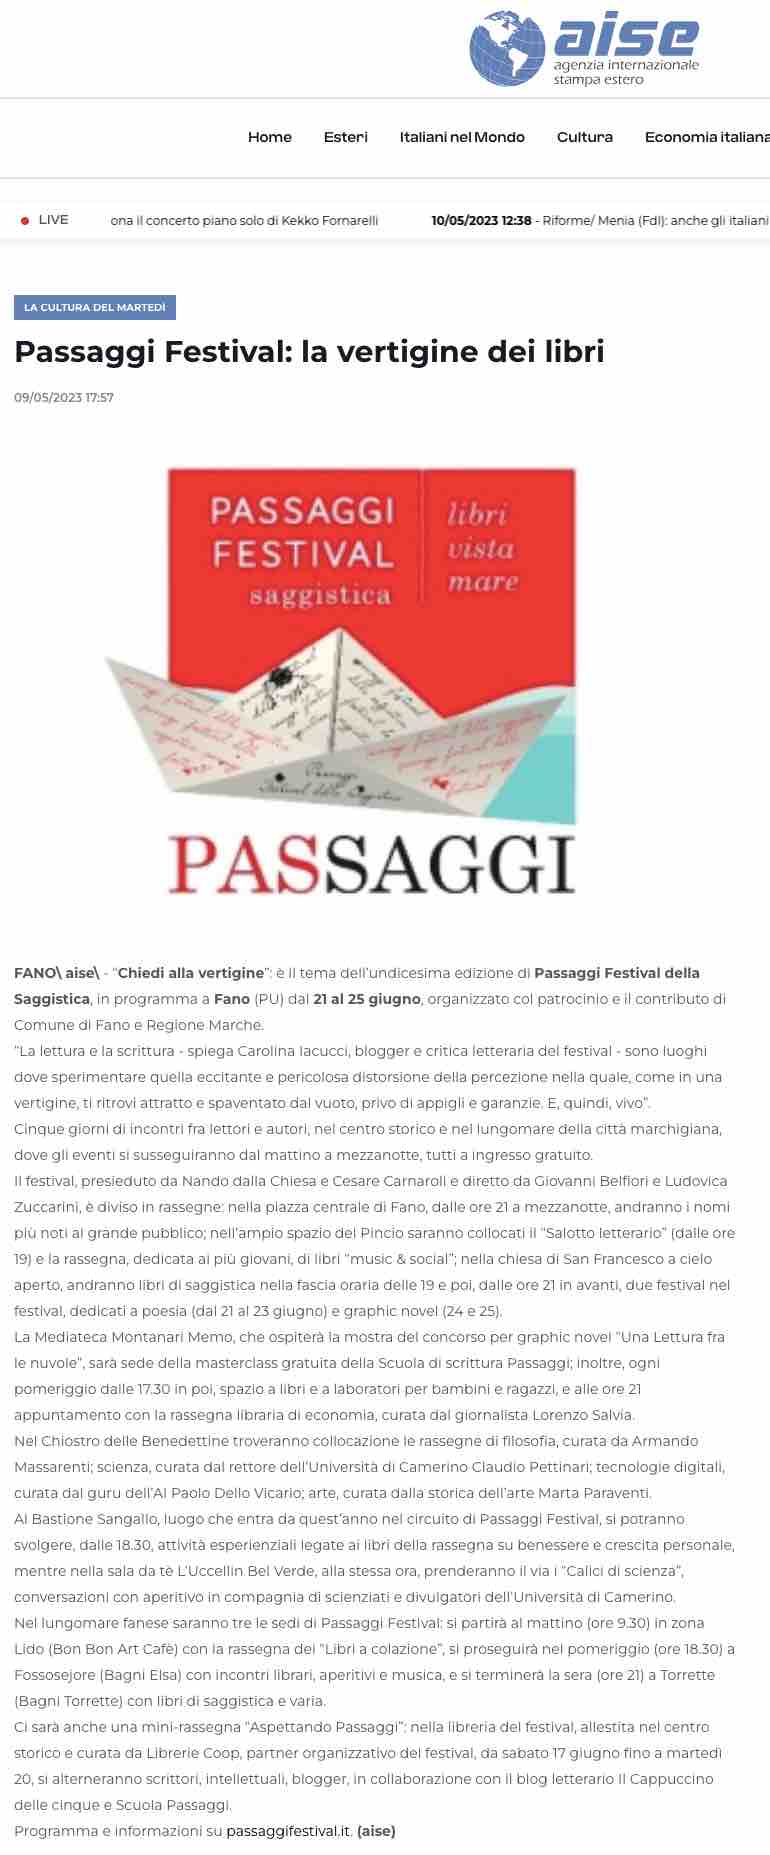 aise_passaggi_festival_la_vertigine_dei_libri